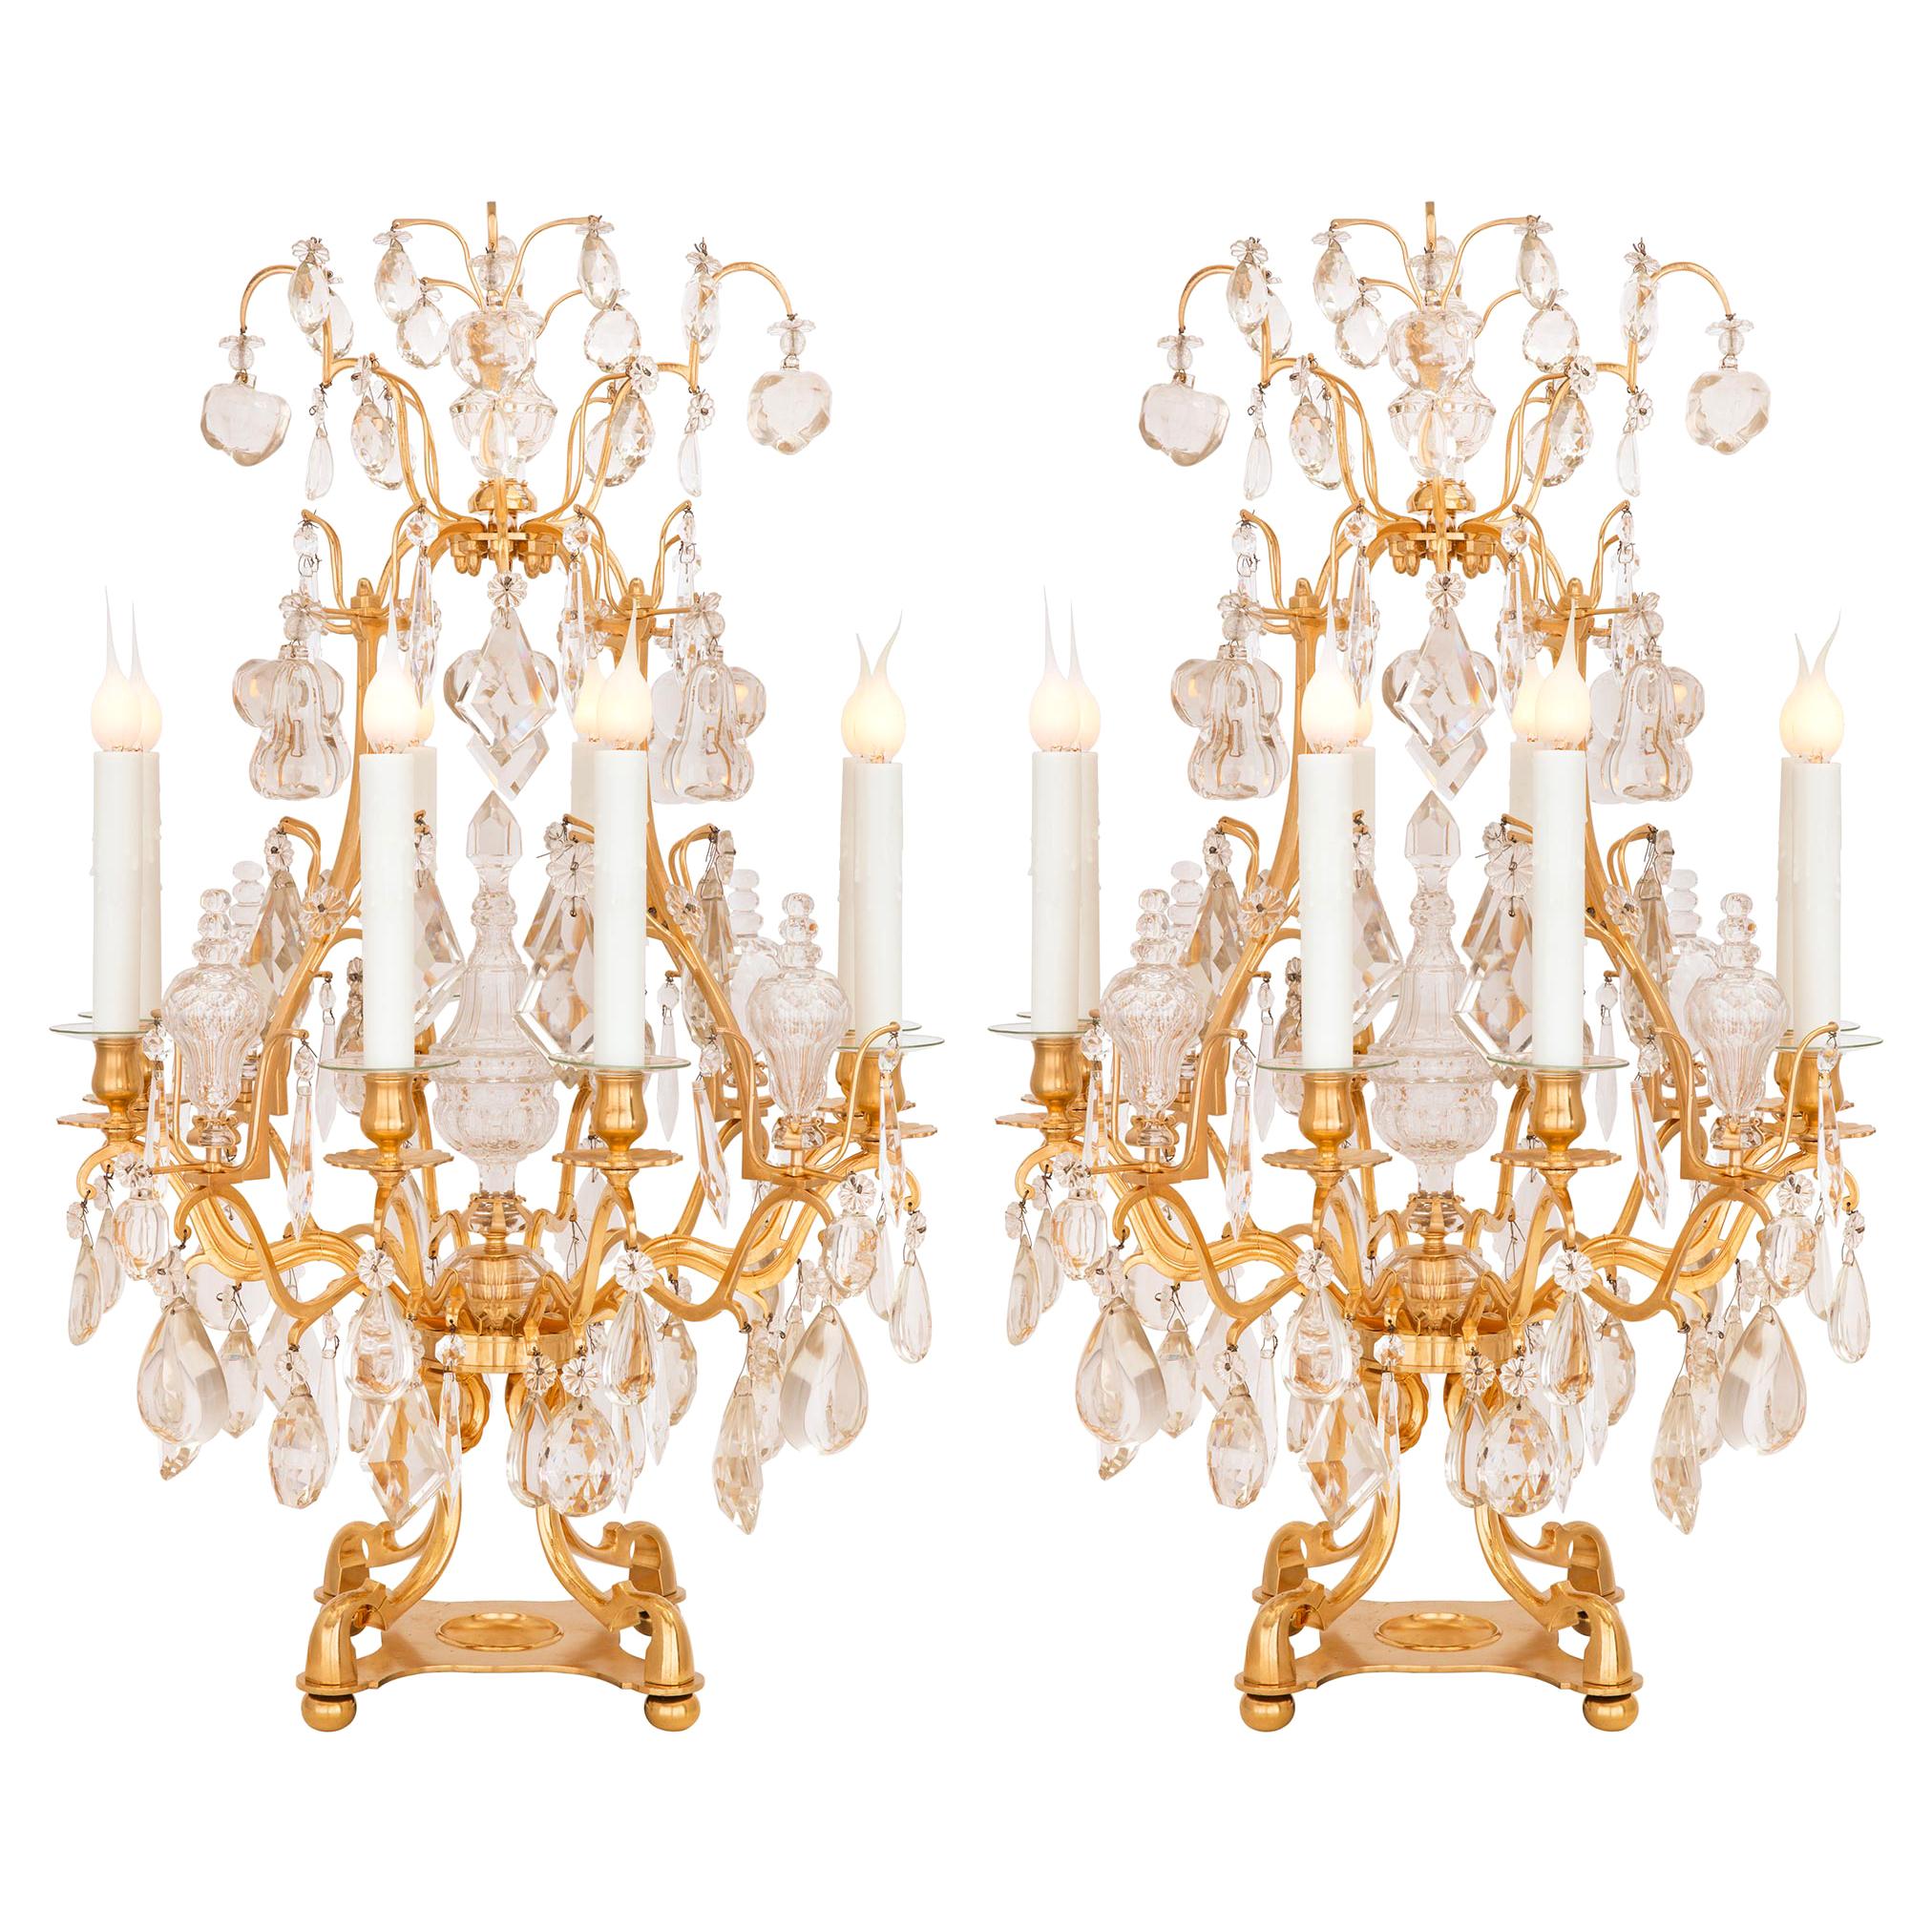 Paire de lampes girandoles françaises d'époque Louis XVI du 19ème siècle de style Belle poque